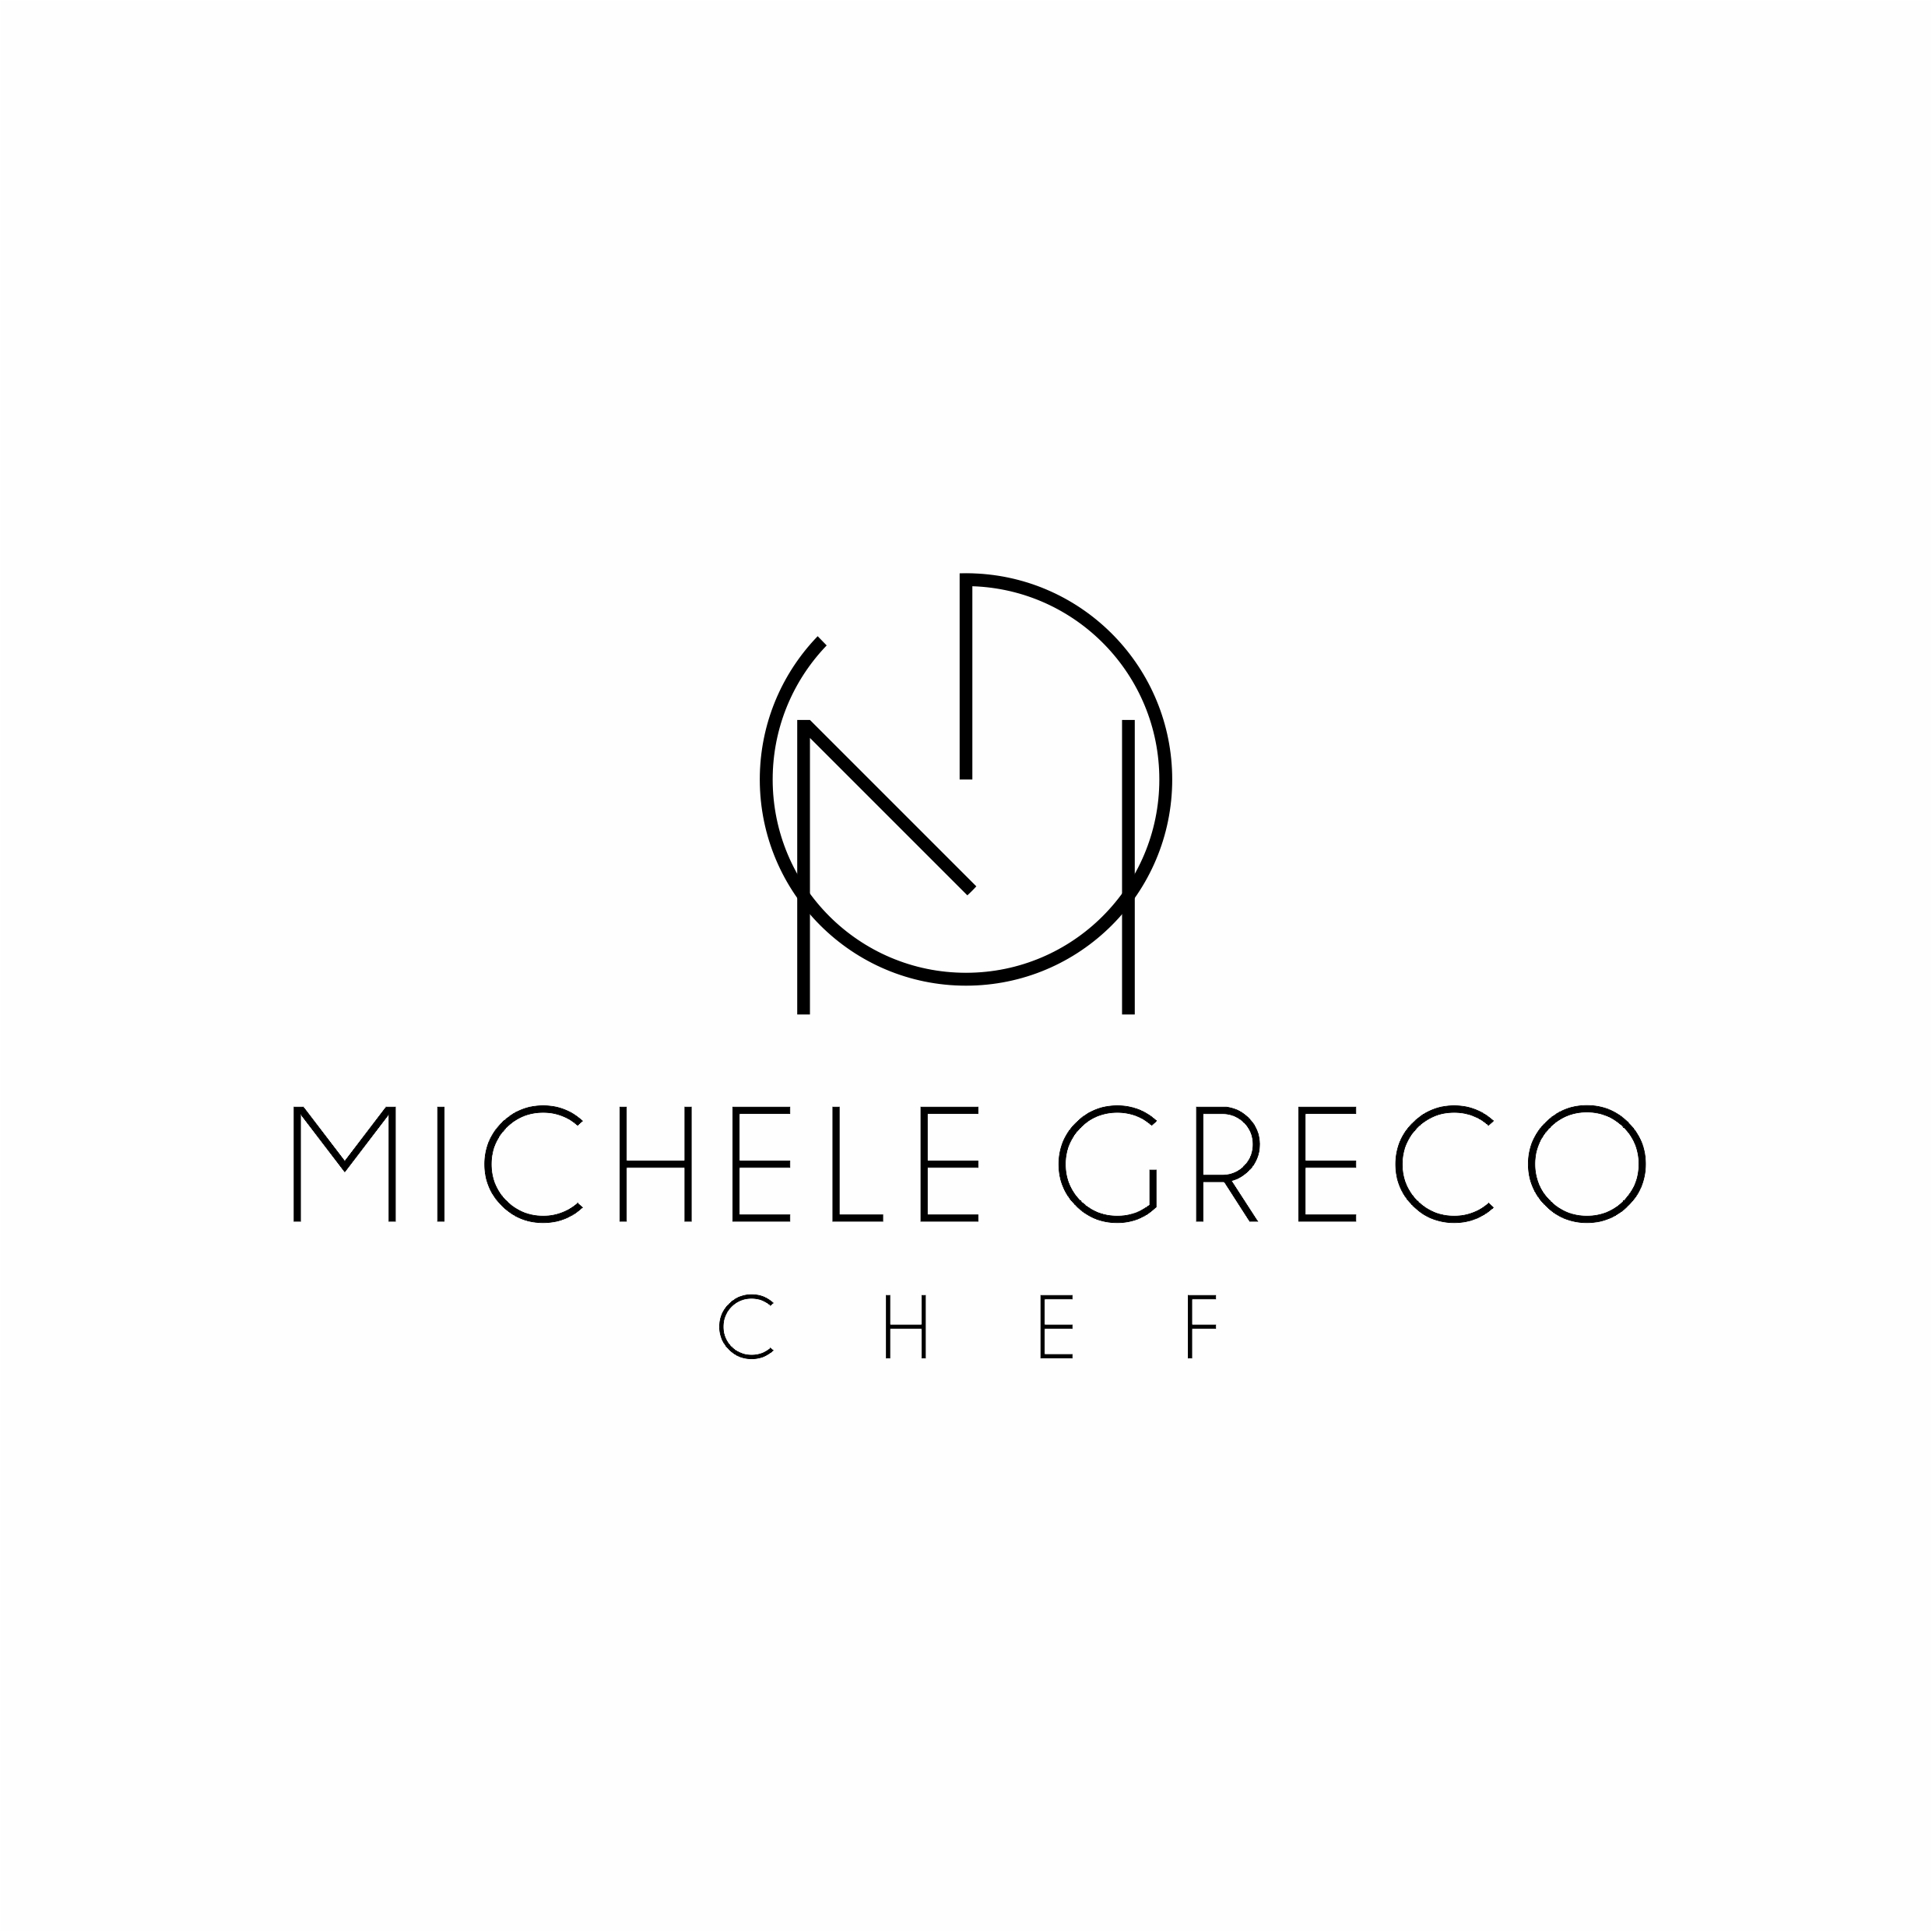 Michele Greco